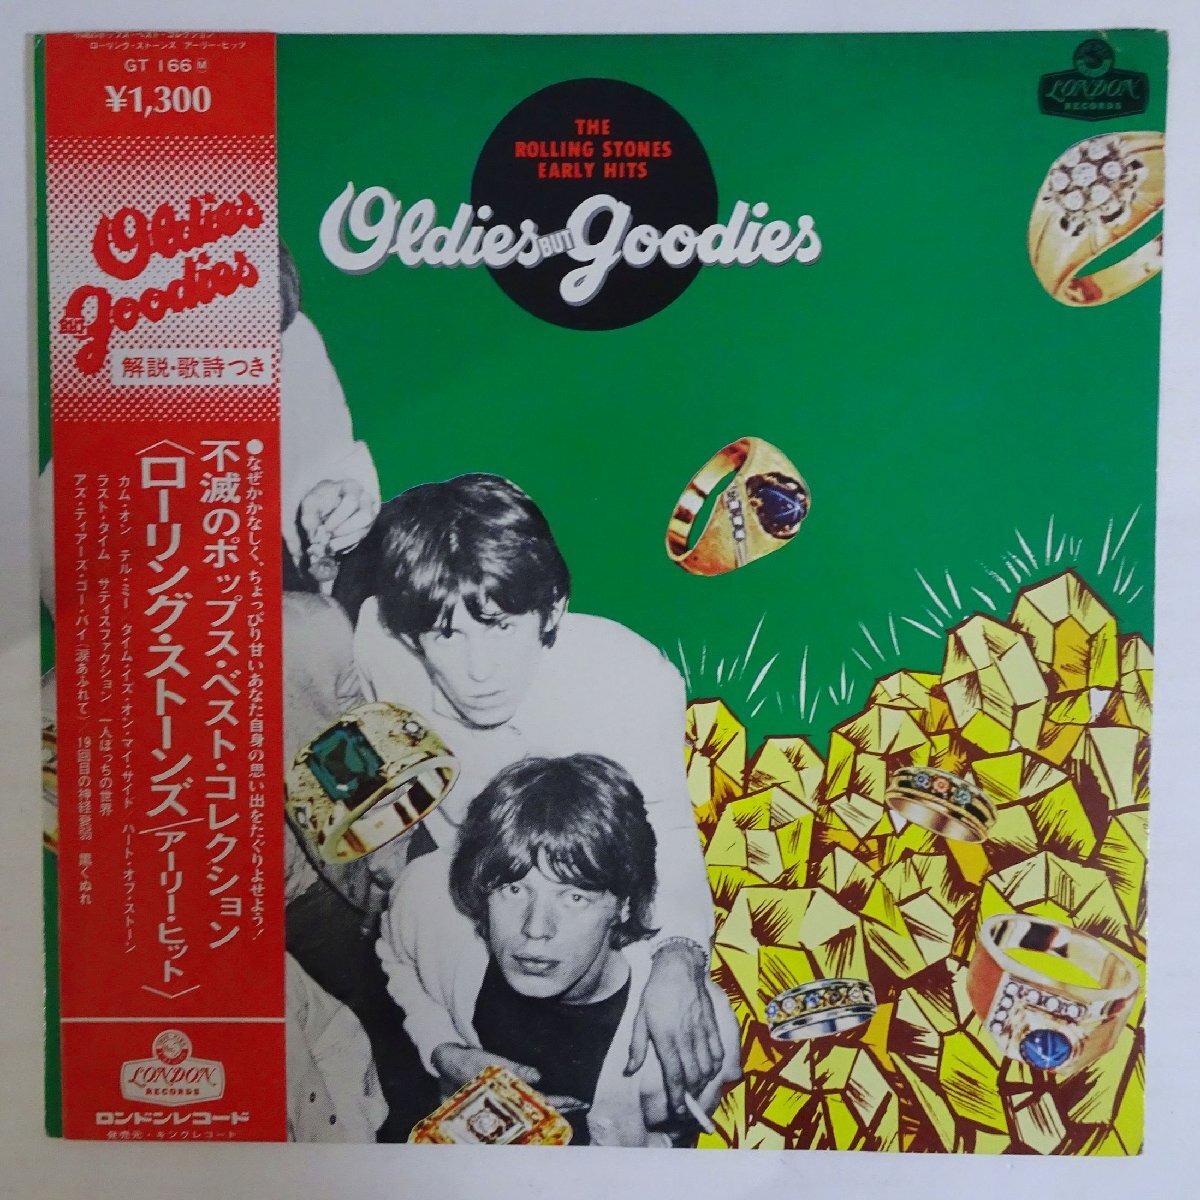 11186467;【帯付き】The Rolling Stones / Oldies But Goodies (The Rolling Stones Early Hits)_画像1